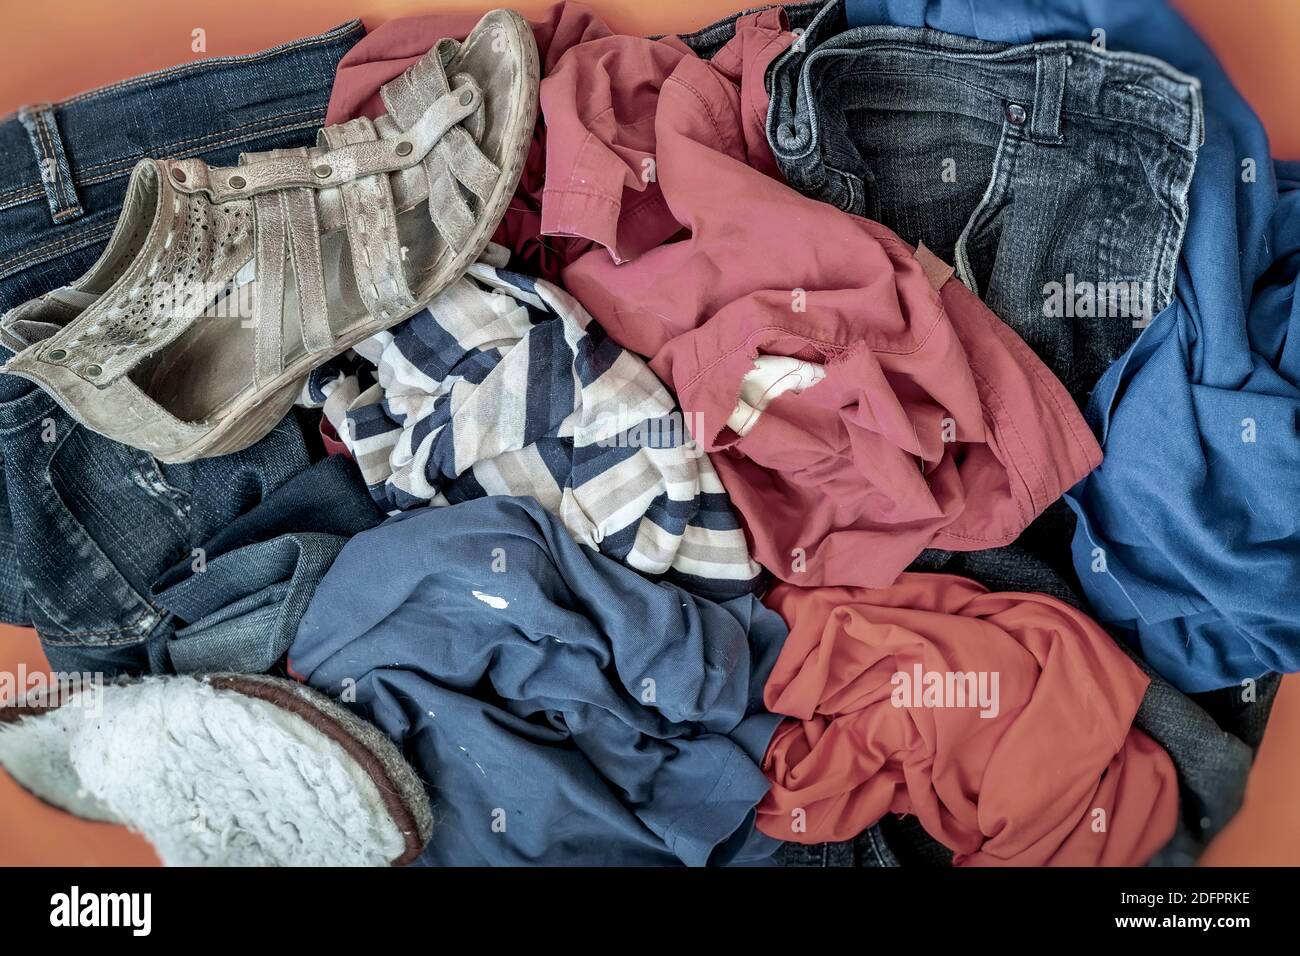 Stapel von alten schmutzigen Kleidern und Schuhen zur Entsorgung. Blick von oben. Recycling-Verarbeitung, recyclingfähige Materialien Konzept Stockfoto